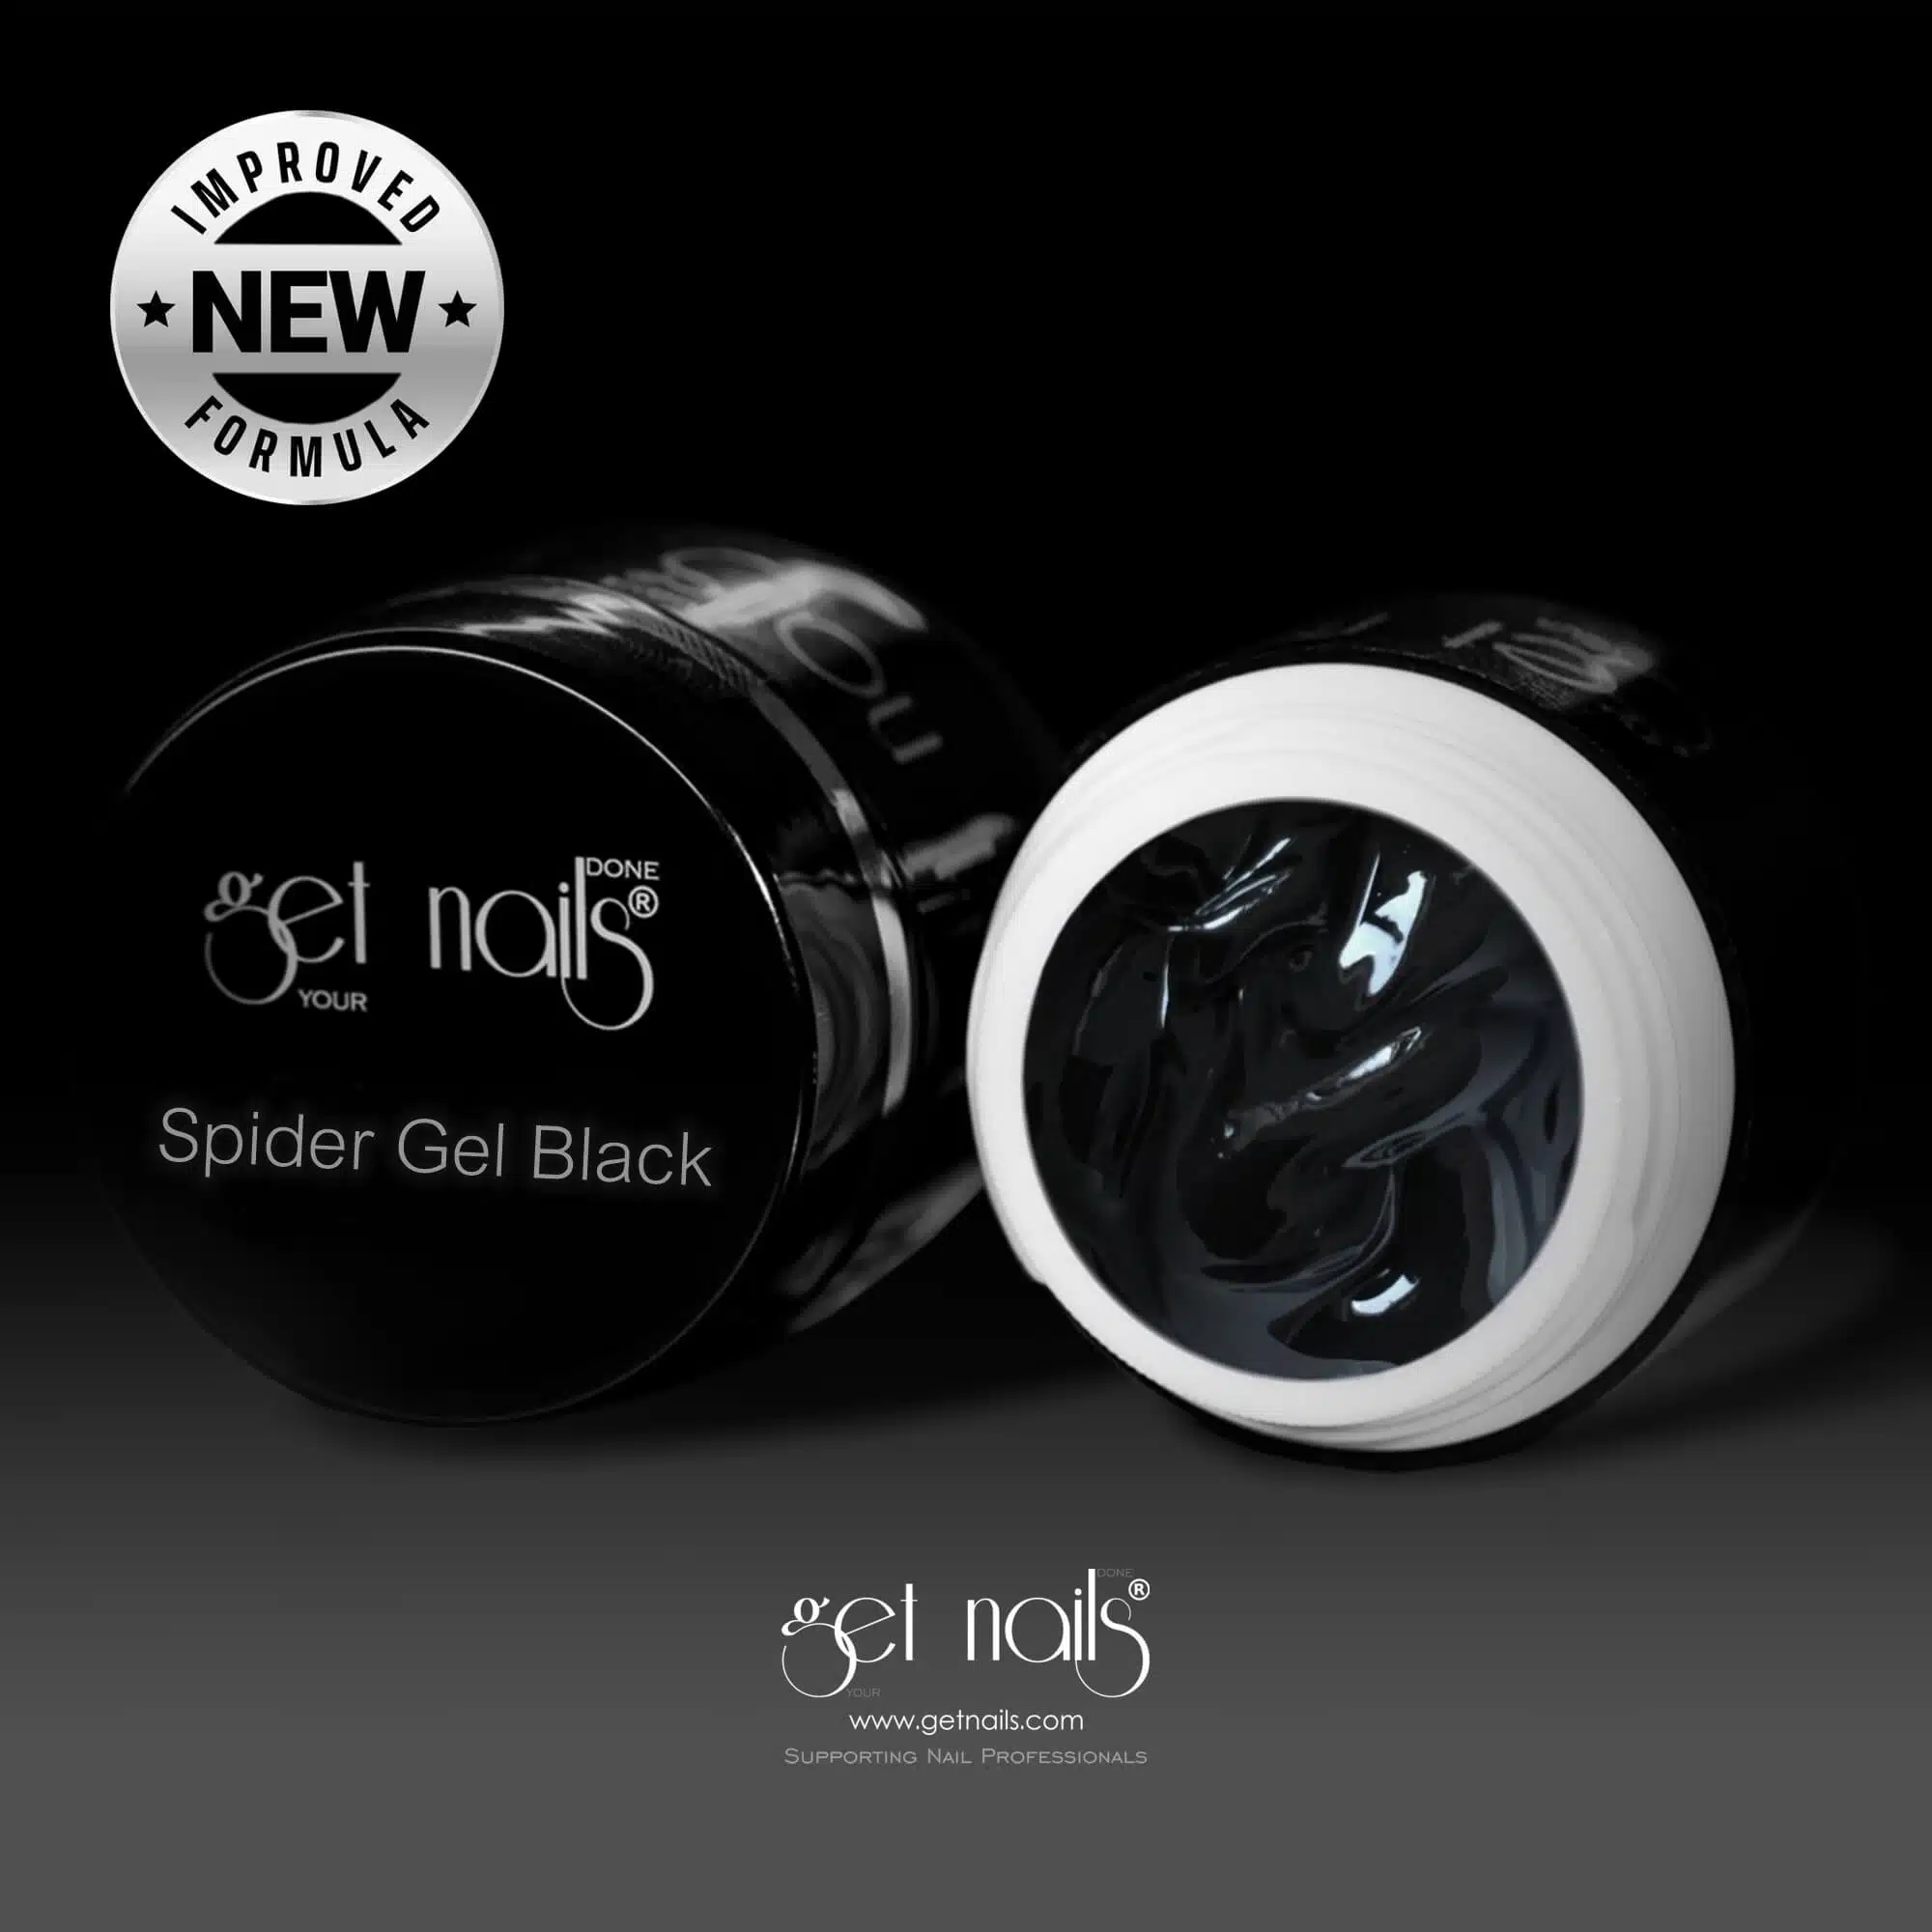 Get Nails Austria - Spider Gel Black: Черный